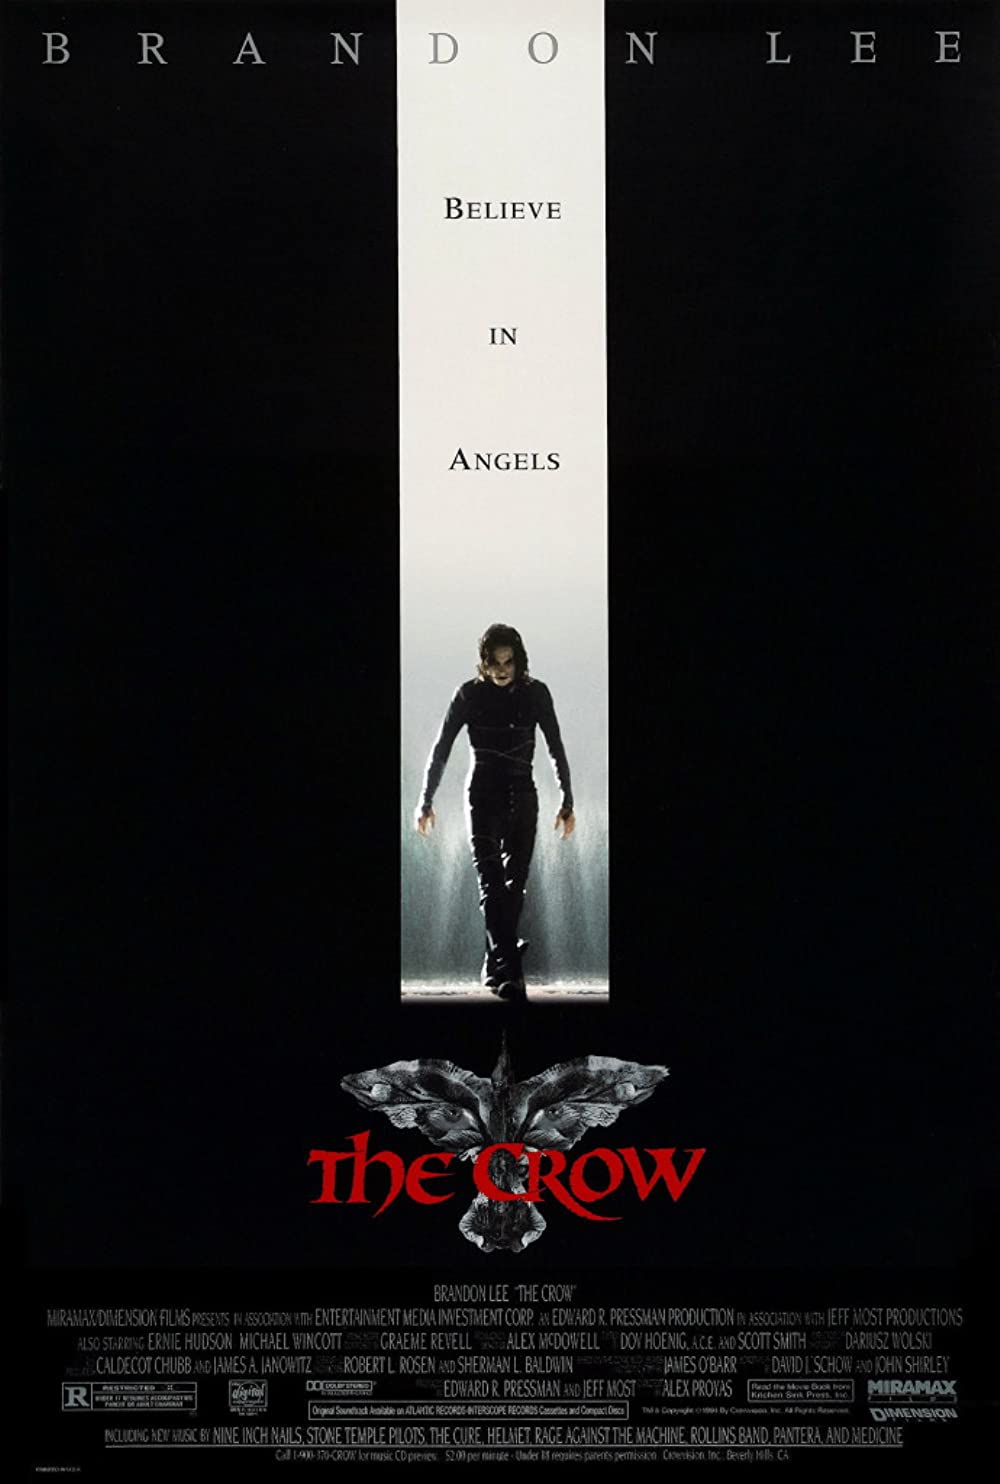 Filmbeschreibung zu The Crow